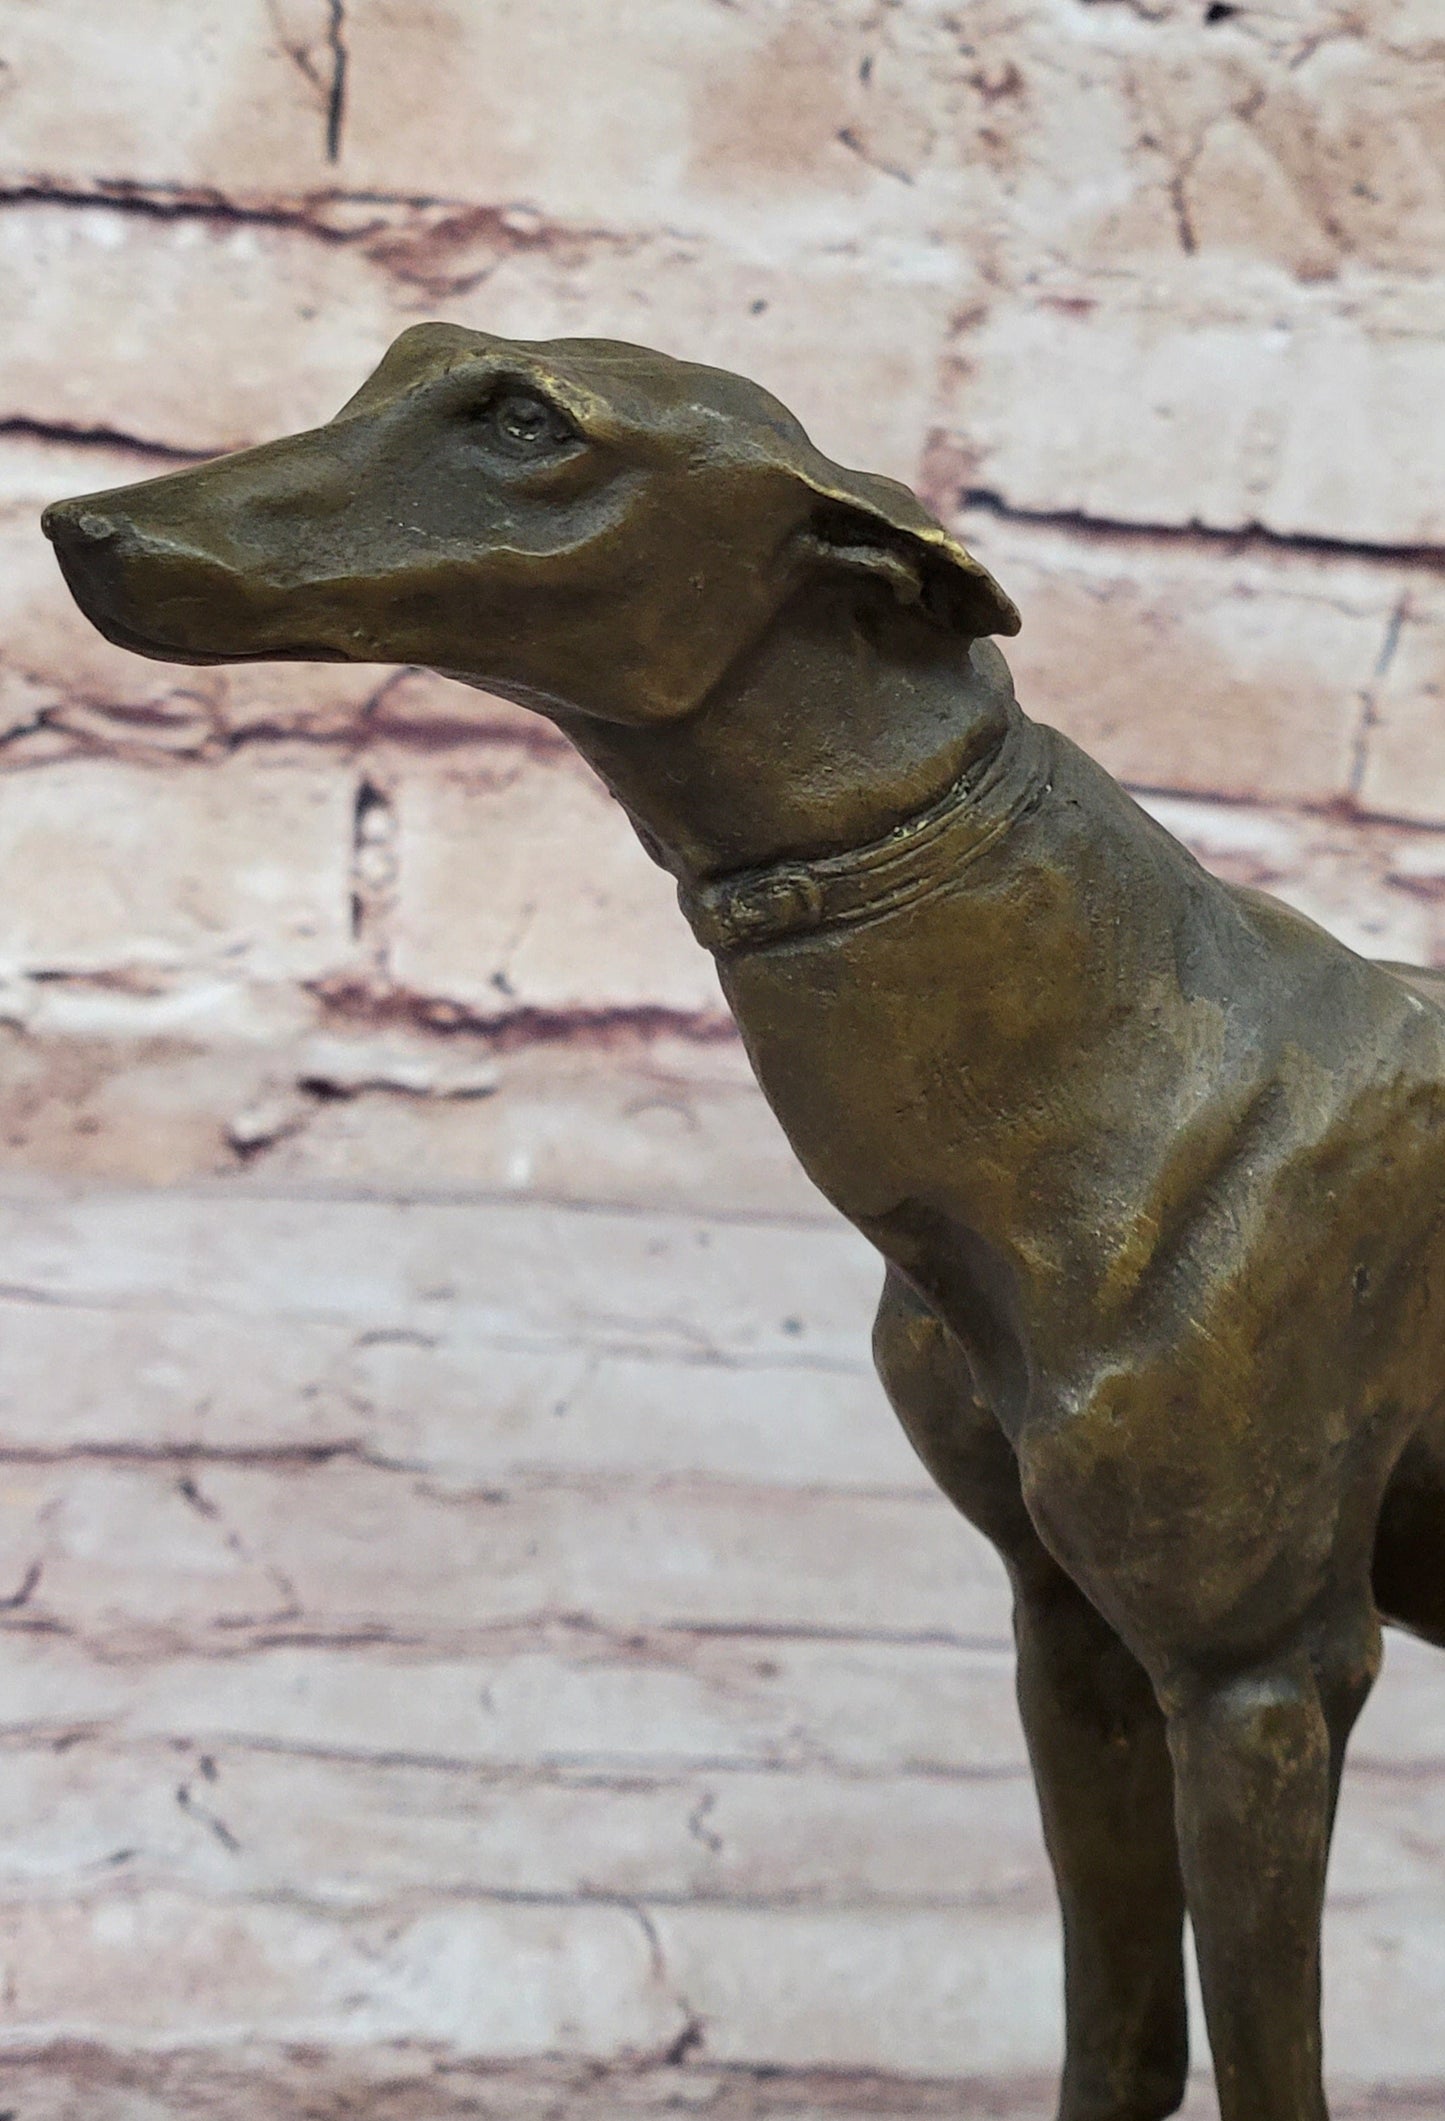 Greyhound Race Dog Bronze Sculpture by Fremiet